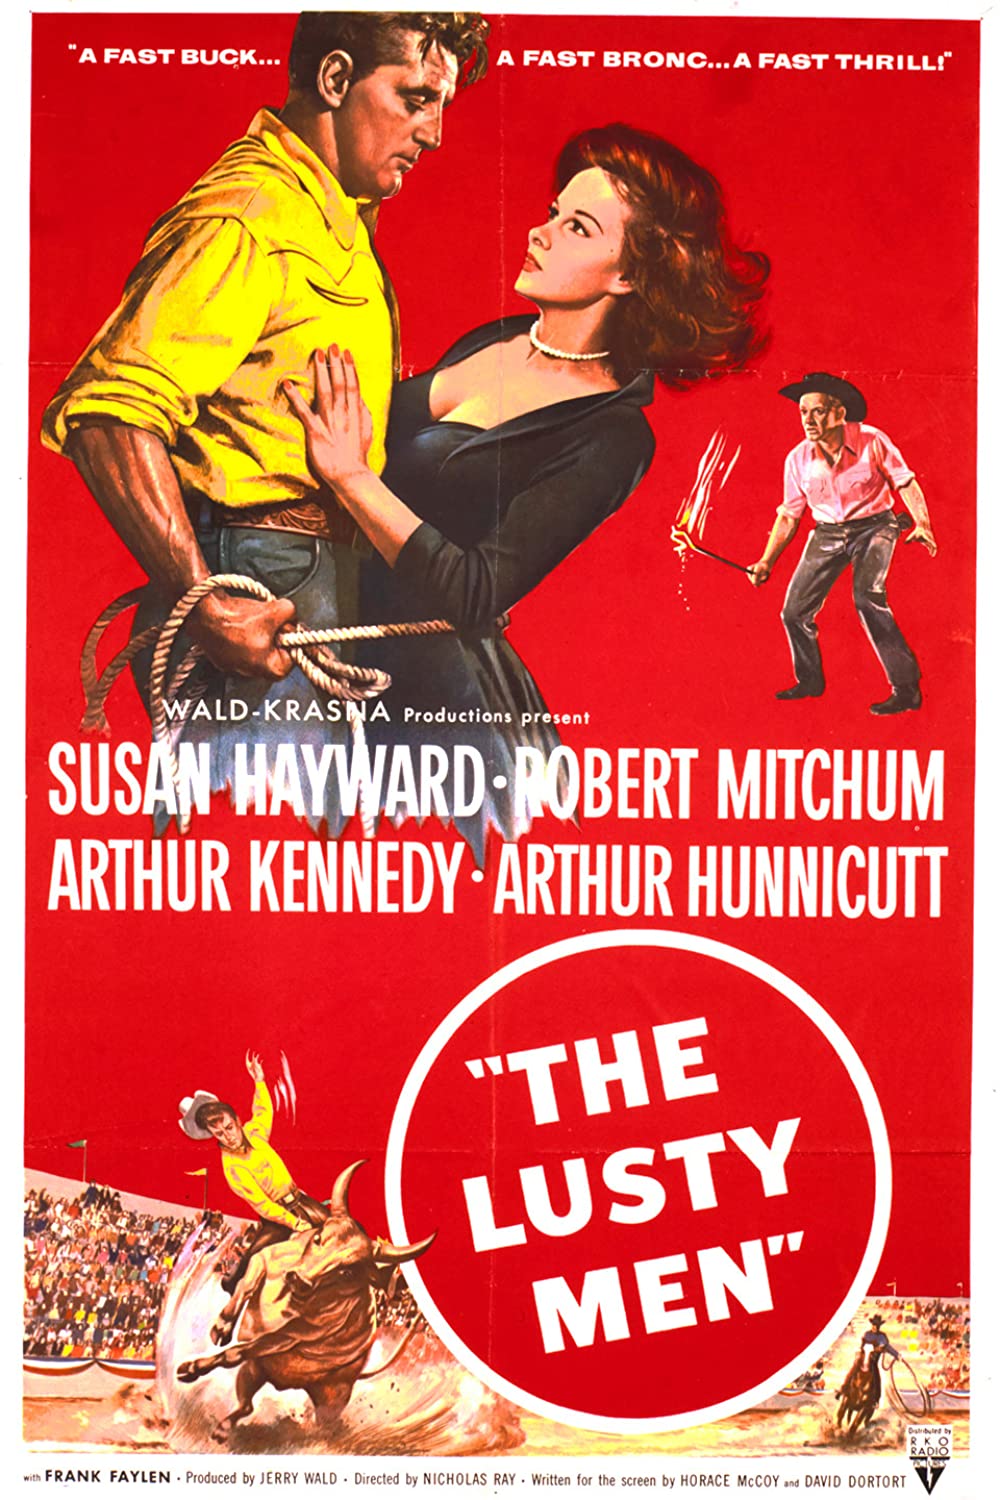 Filmbeschreibung zu The Lusty Men (OV)